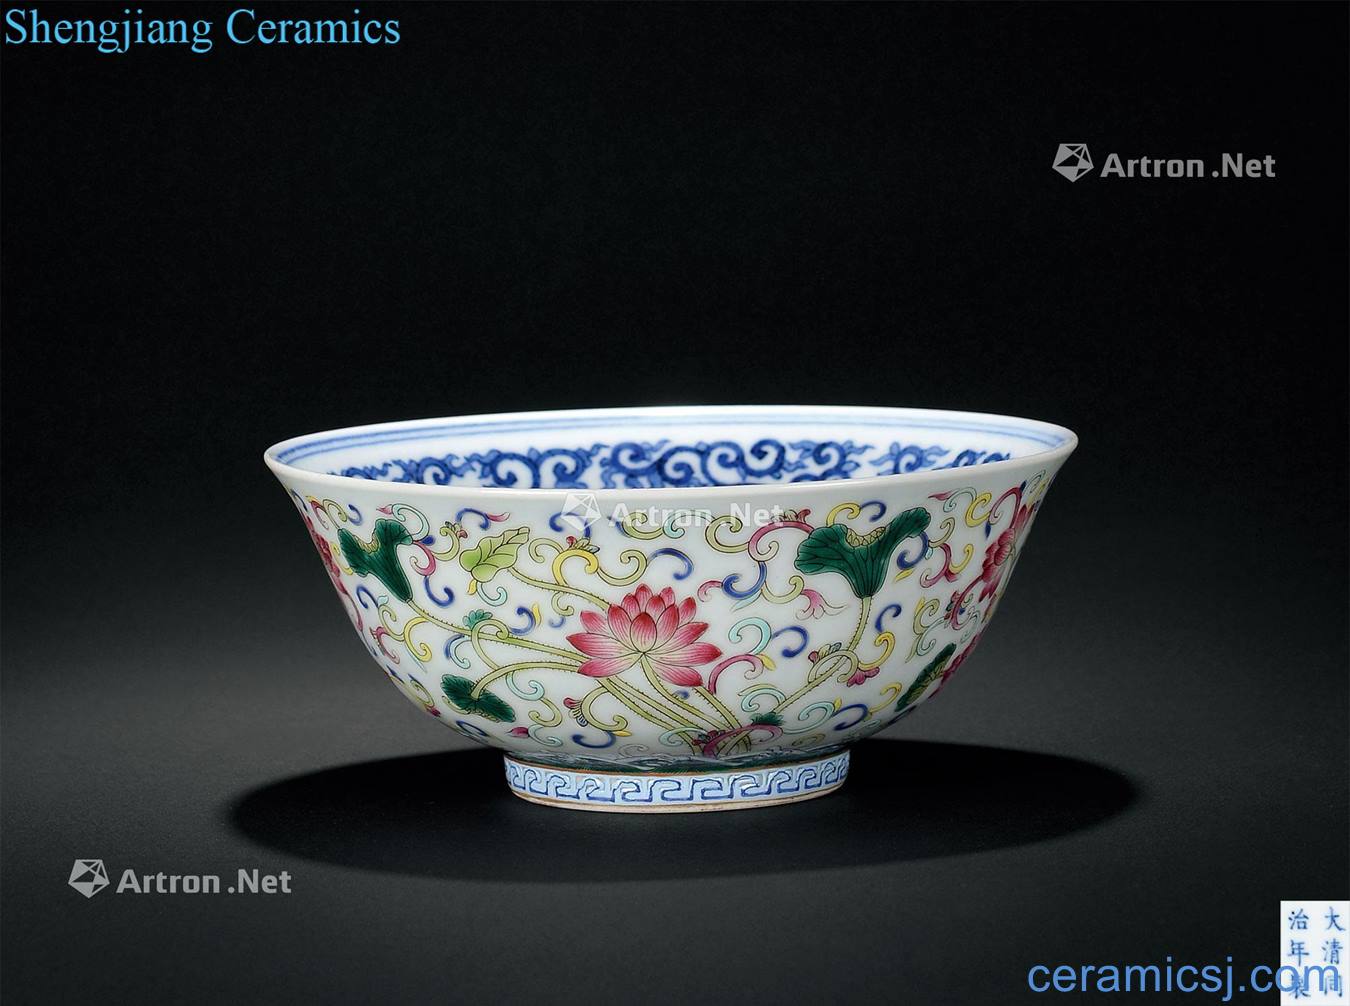 Dajing pastel blue lotus pattern bowl